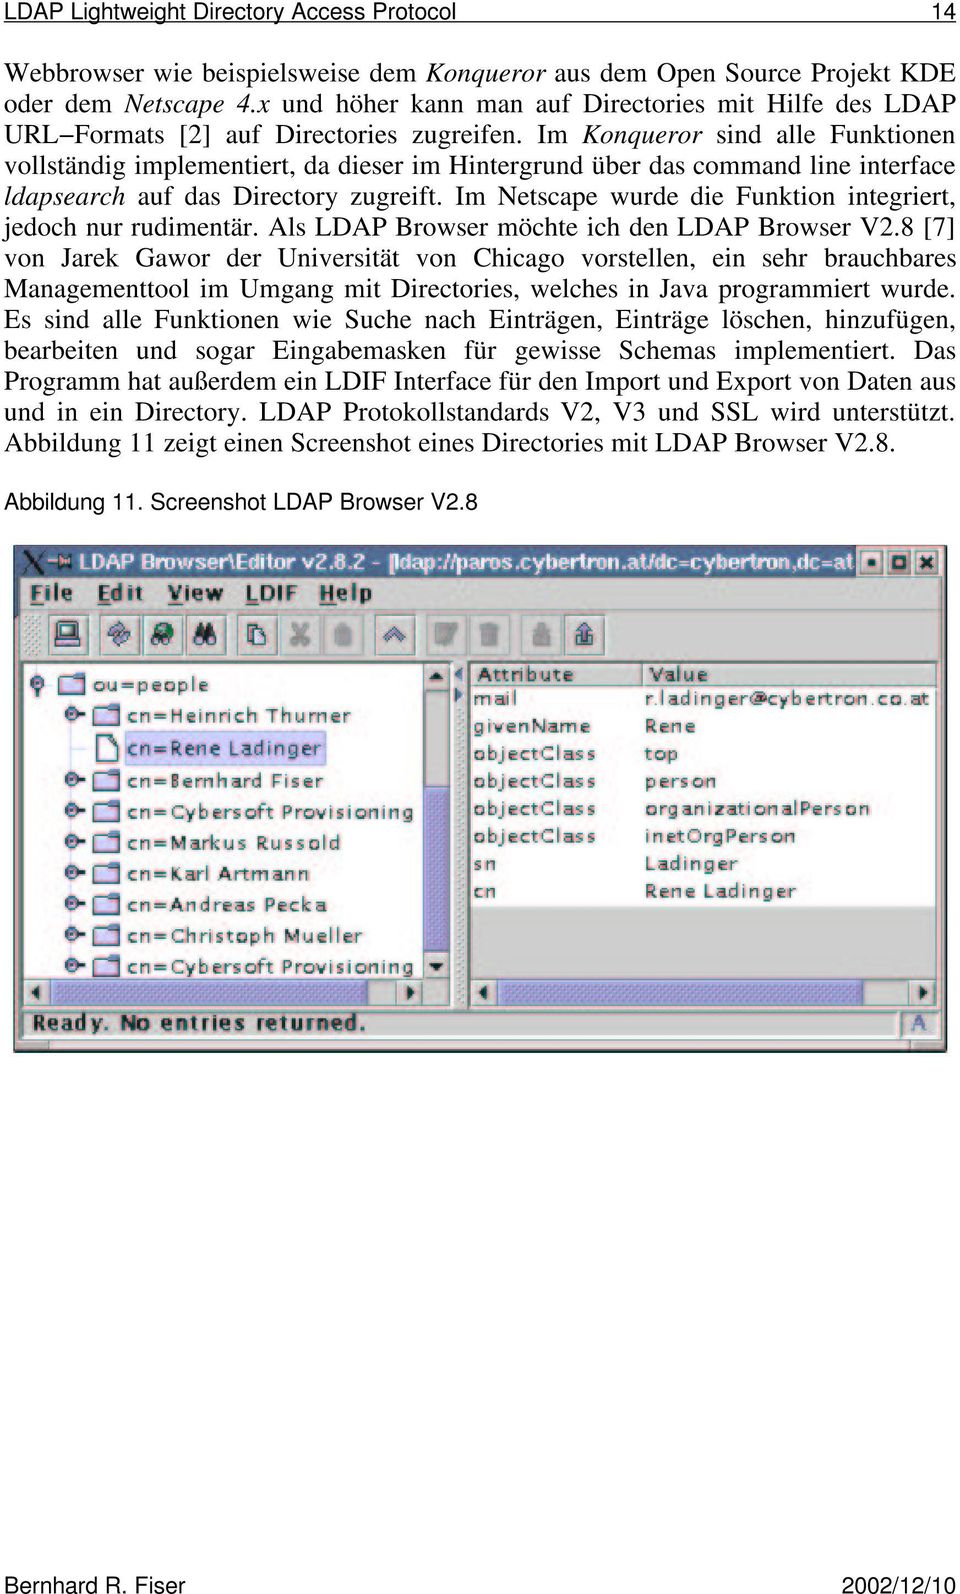 Im Konqueror sind alle Funktionen vollständig implementiert, da dieser im Hintergrund über das command line interface ldapsearch auf das Directory zugreift.